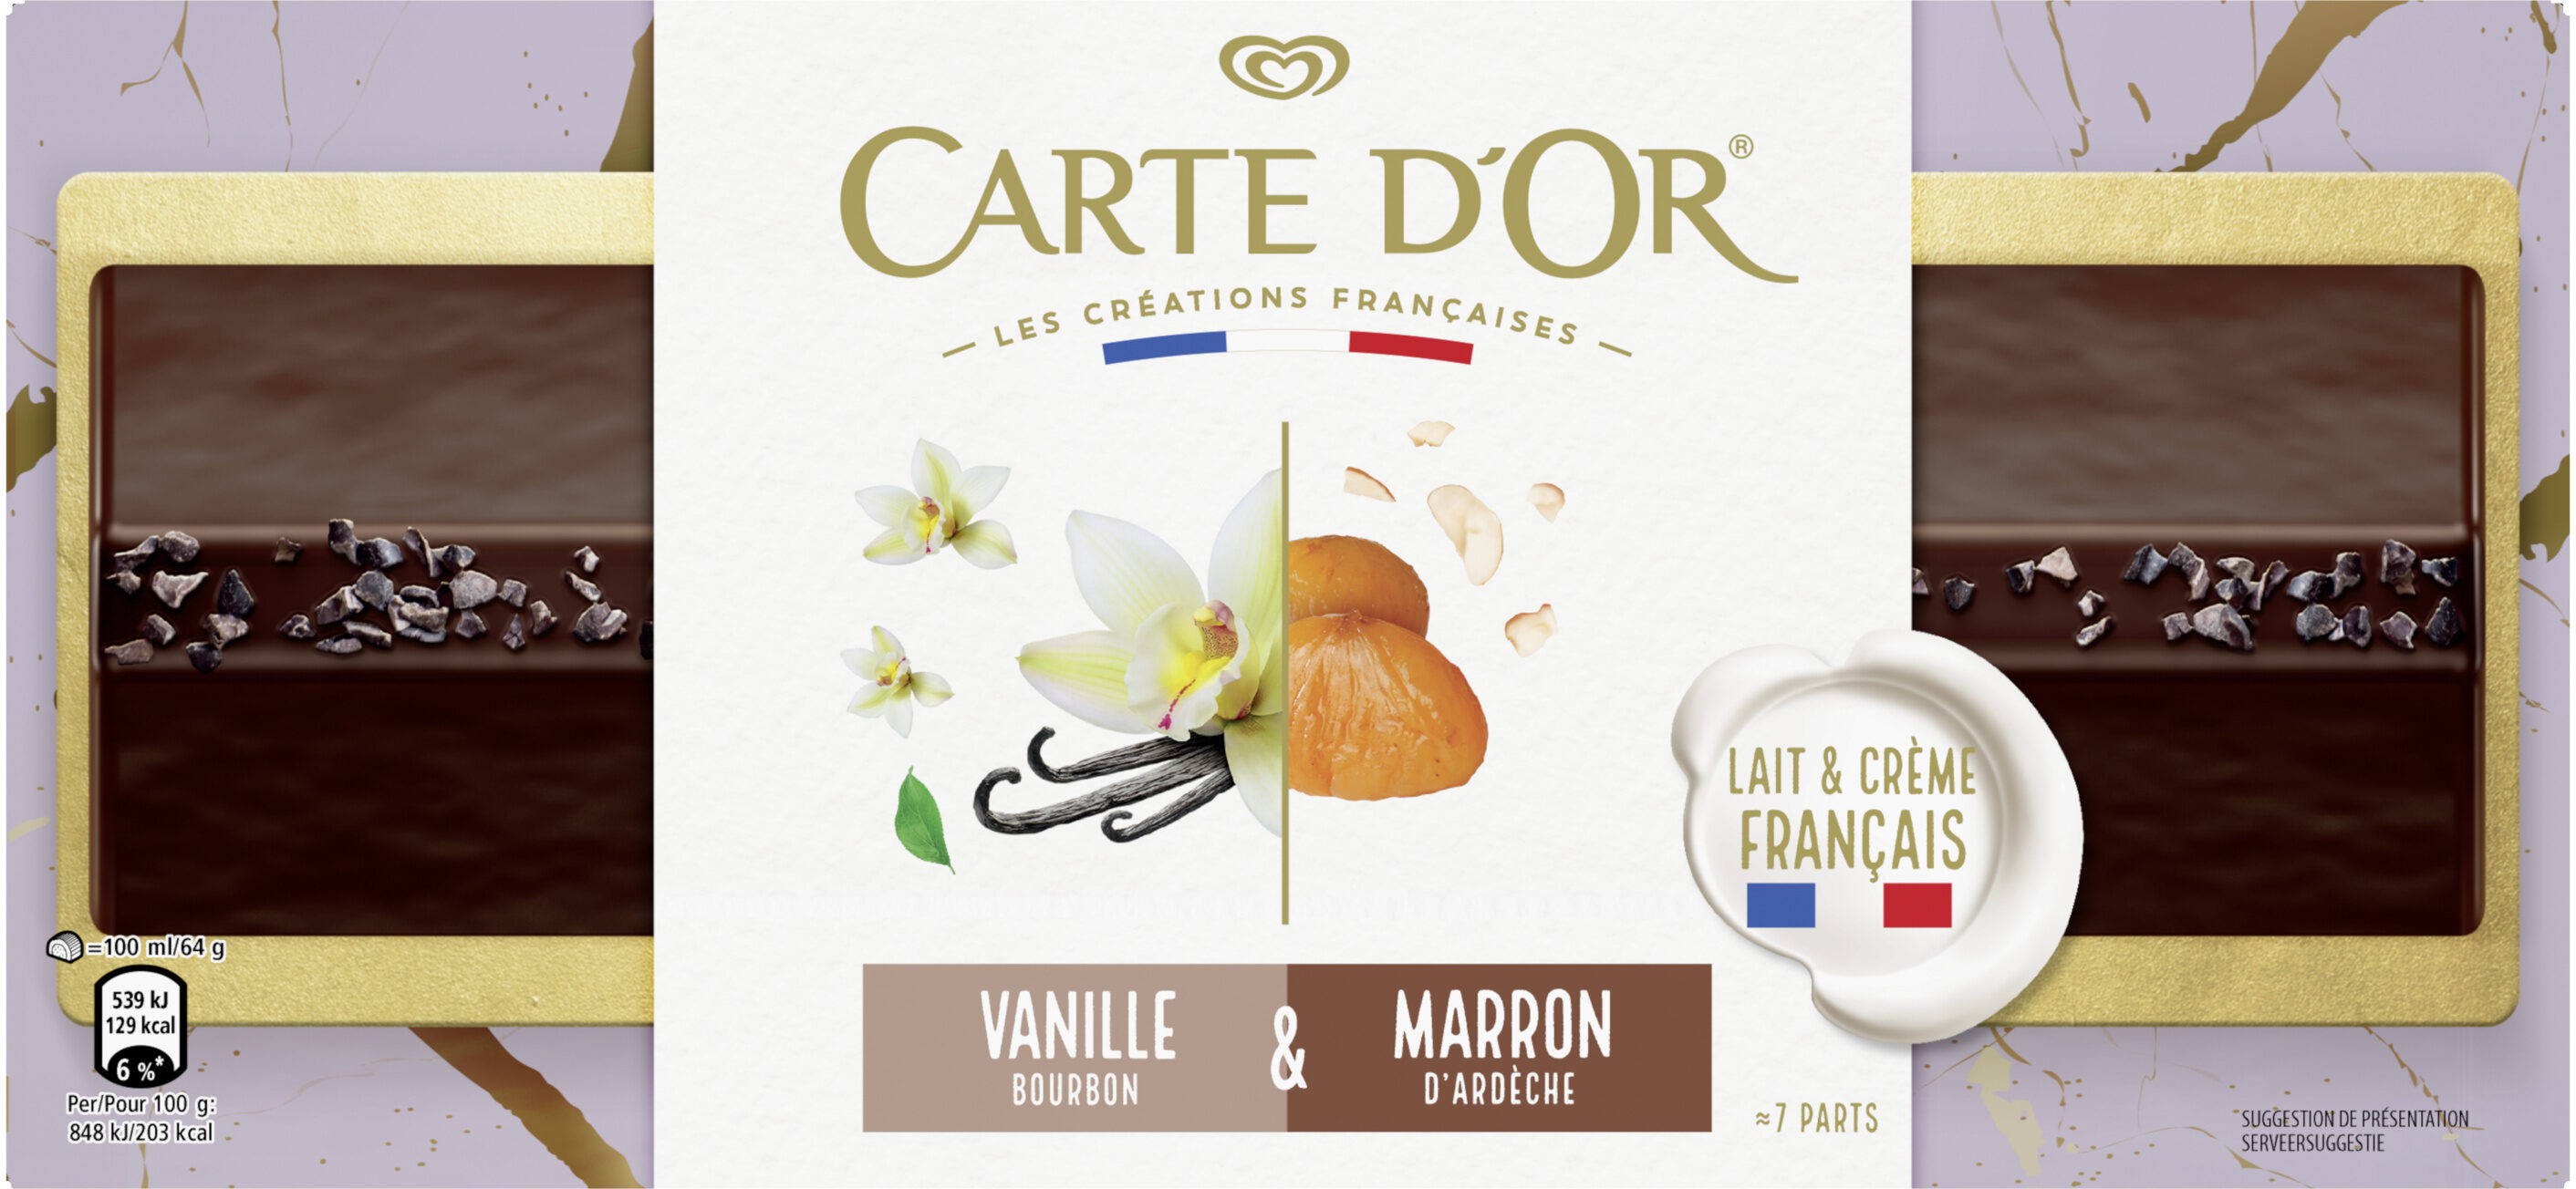 Carte D'Or Bûche Glacée Vanille Bourbon & Marron d'Ardèche 700ml - Product - fr